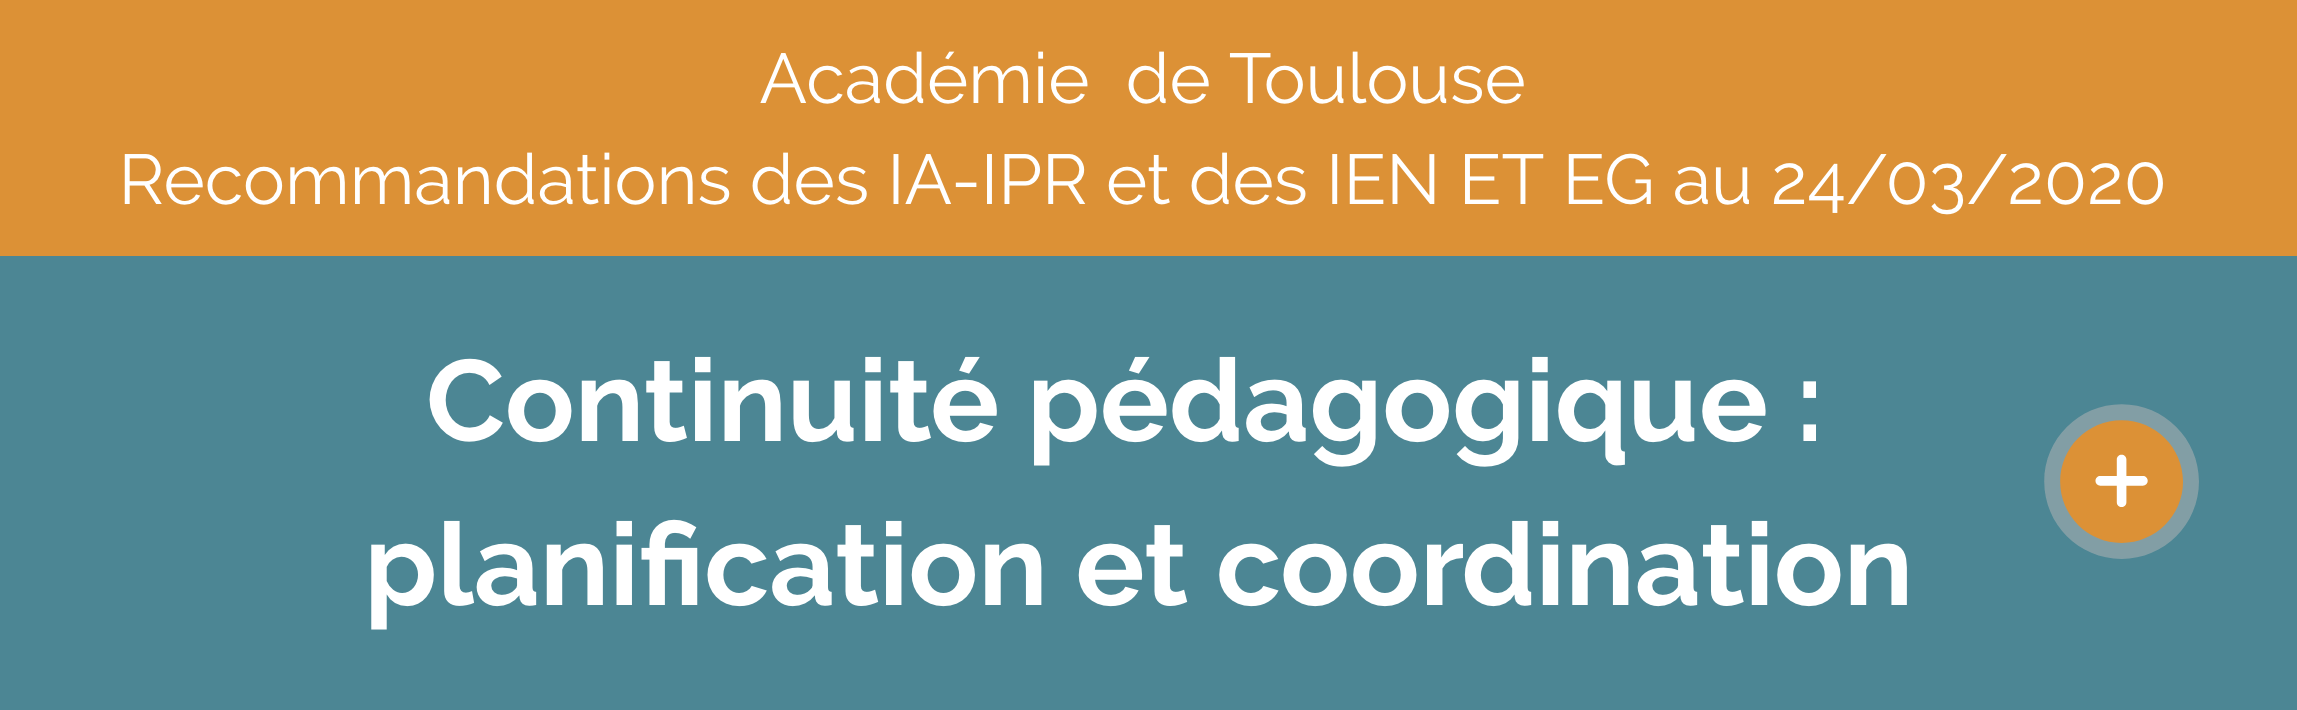 recommandations_de_mises_en_oeuvre_de_la_continuite_pedagogique.png